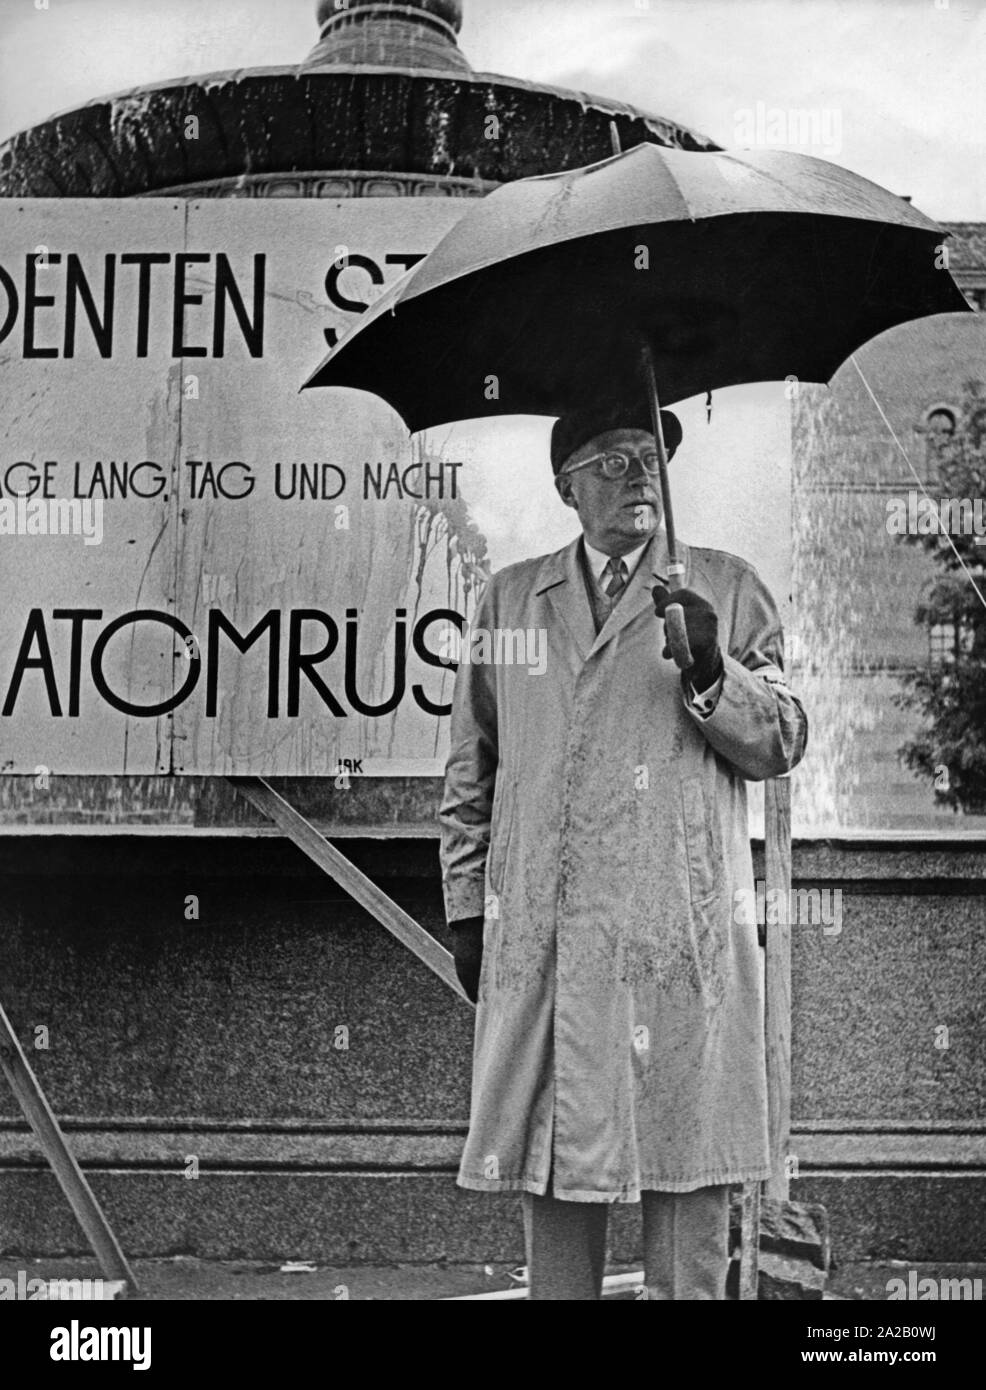 Das Bild zeigt die Arzt und Dermatologe Alfred Marchionini an einer Mahnwache gegen nukleare Rüstung vor dem Hauptgebäude der Ludwig-Maximilians-Universität in München. Dieses Bild wurde vermutlich während seiner Zeit als Rektor der Universität übernommen. Stockfoto